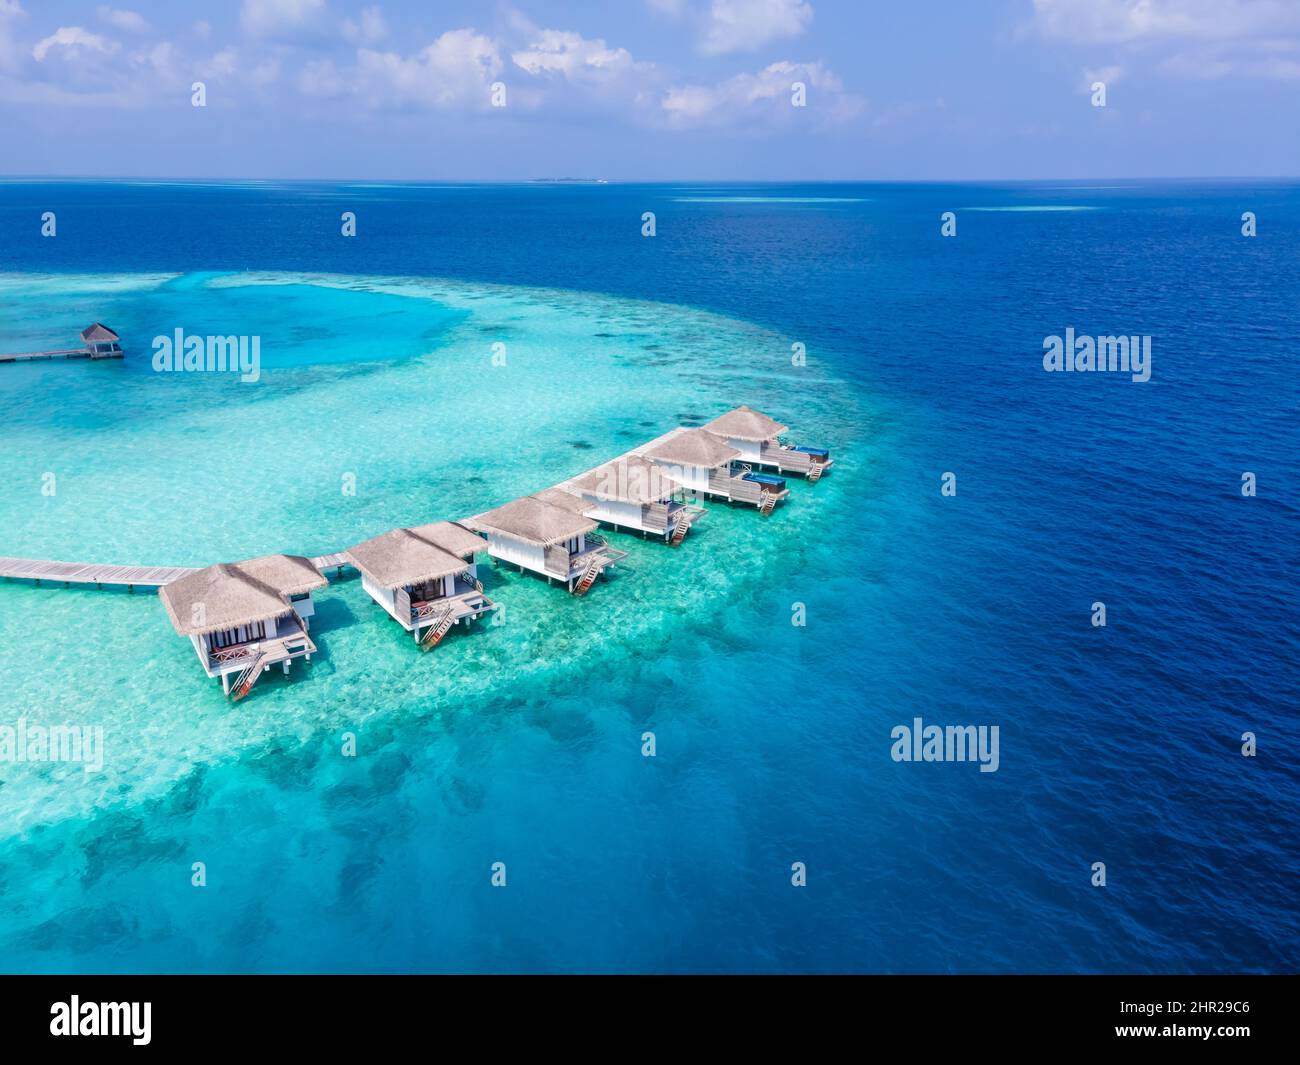 Ville sull'acqua sull'isola tropicale dell'atollo per vacanze di viaggio e luna di miele. Hotel resort di lusso nelle Maldive o nei Caraibi con mare turchese Foto Stock